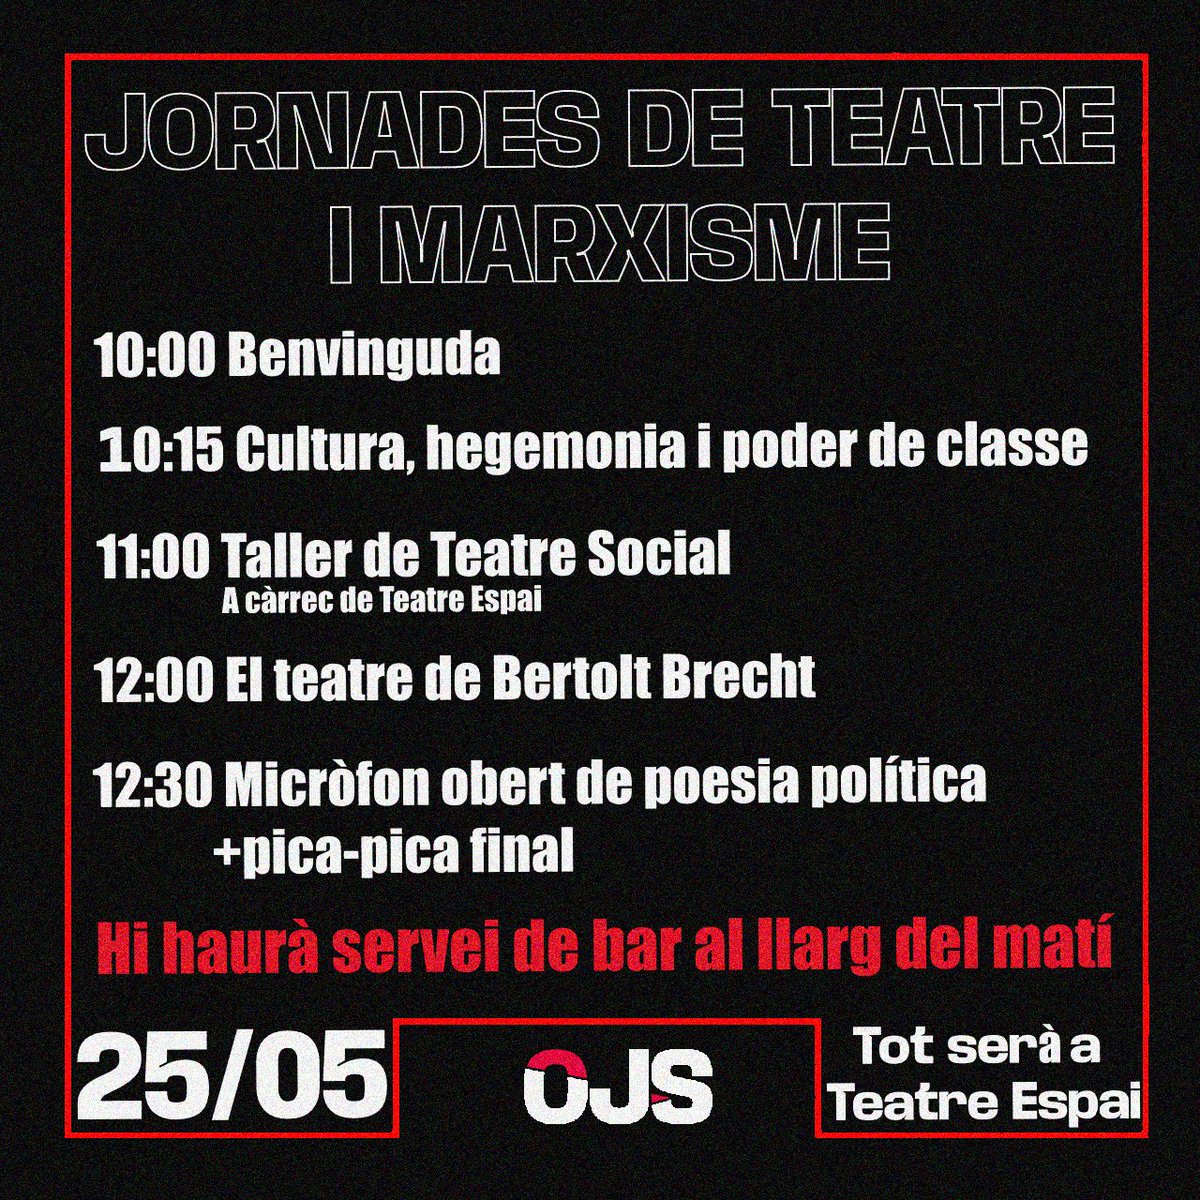 El pròxim dissabte 25 de maig serem a Teatre Espai organitzant conjuntament unes Jornades de Teatre i Marxisme.